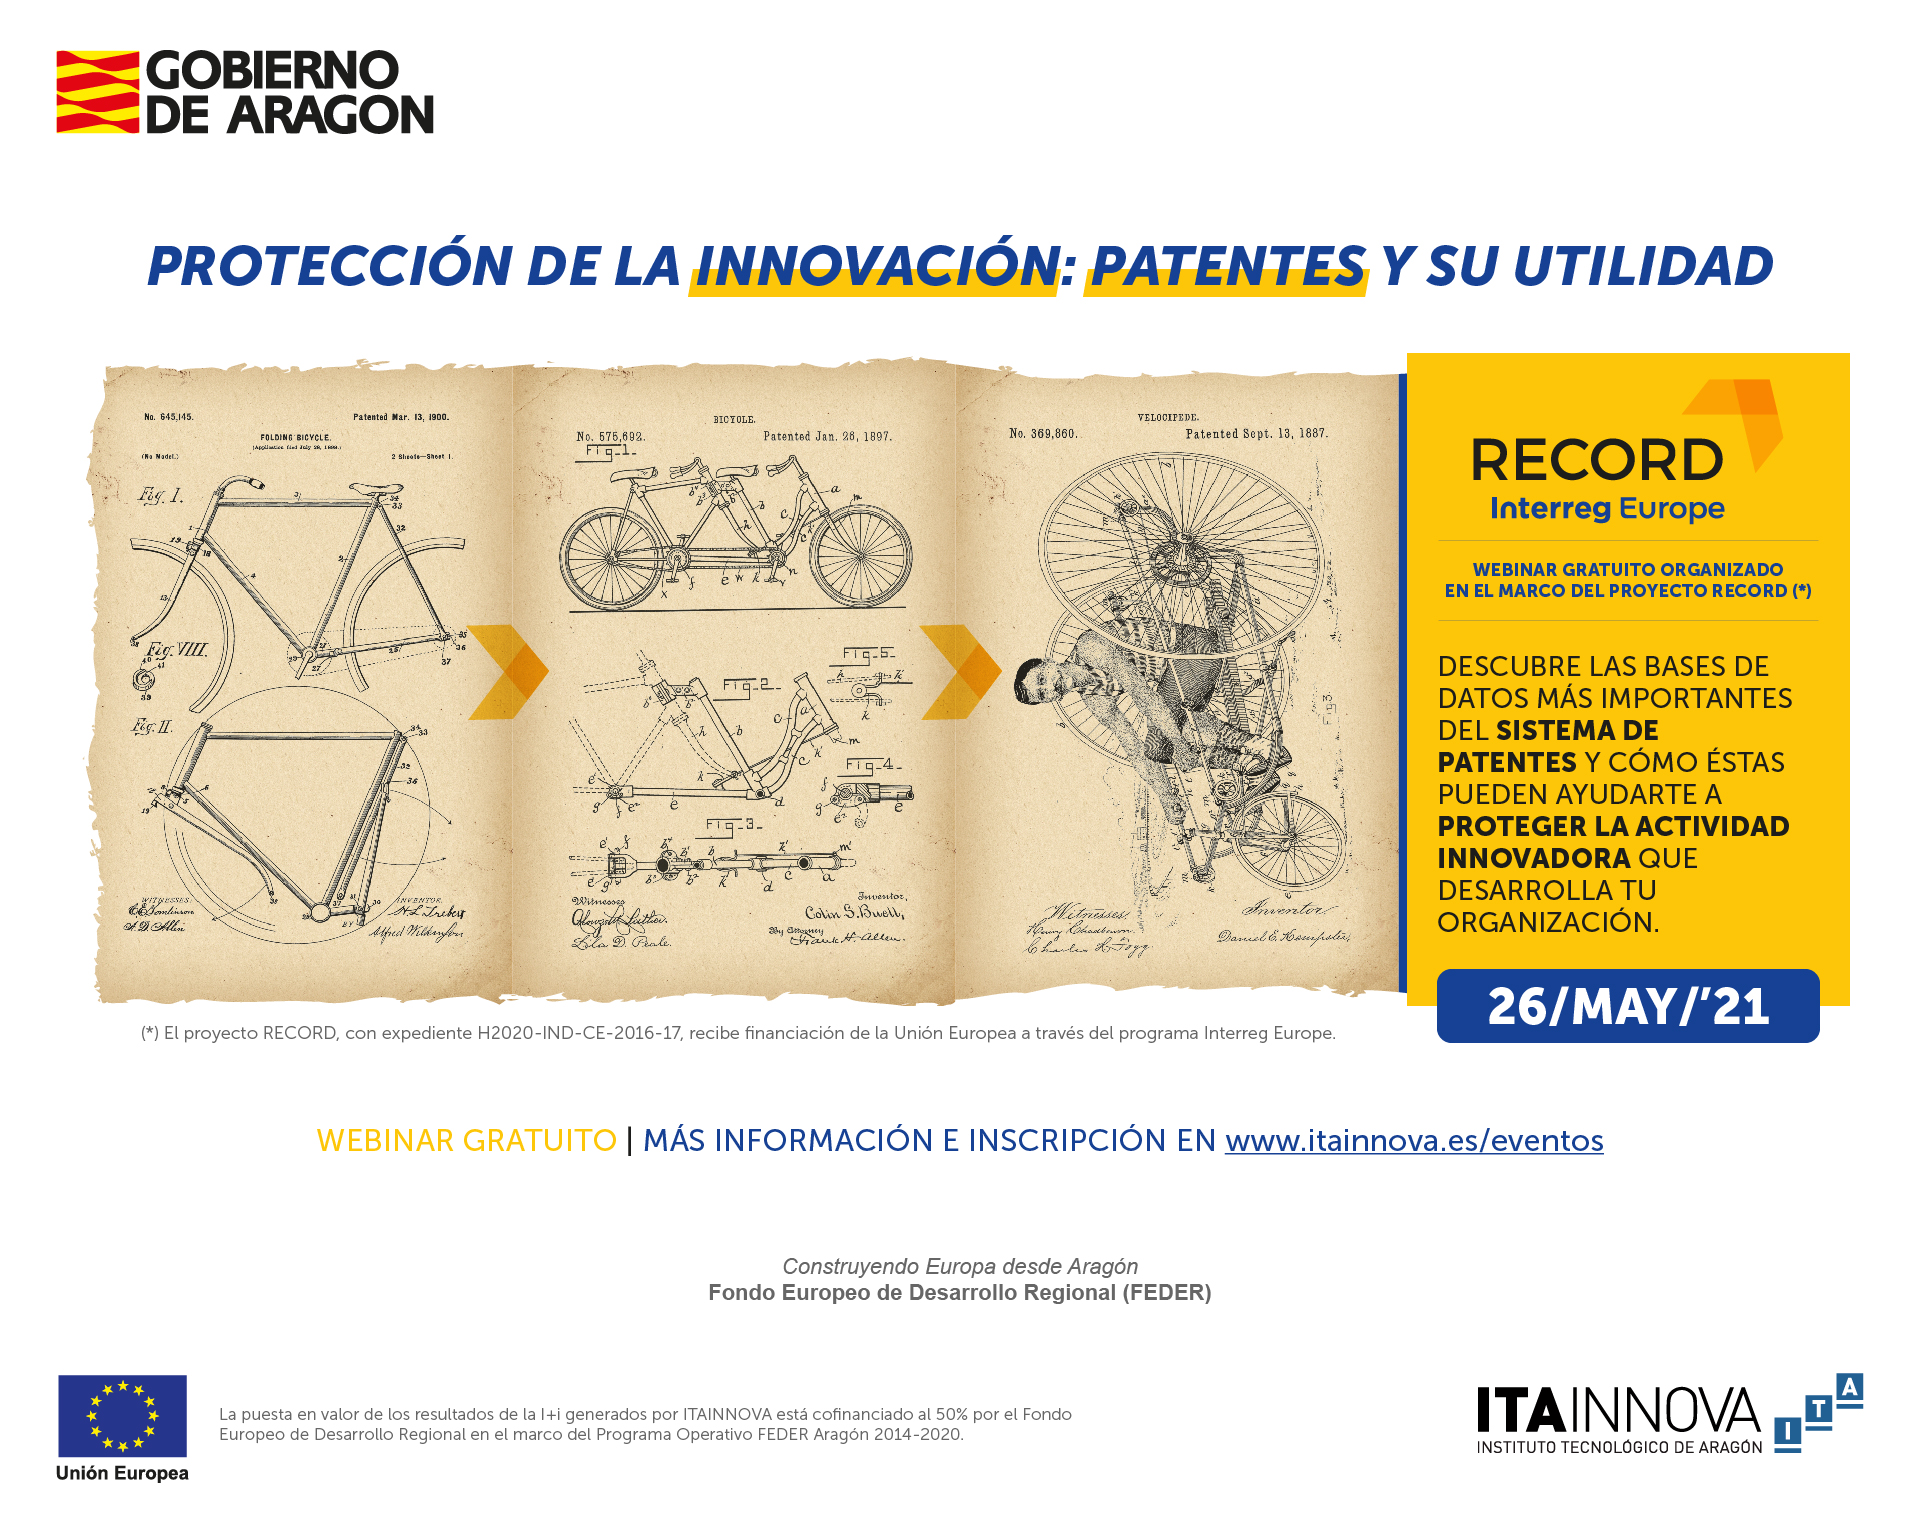 Imagen del webinar "Protección de la innovación: patentes y su utilidad"